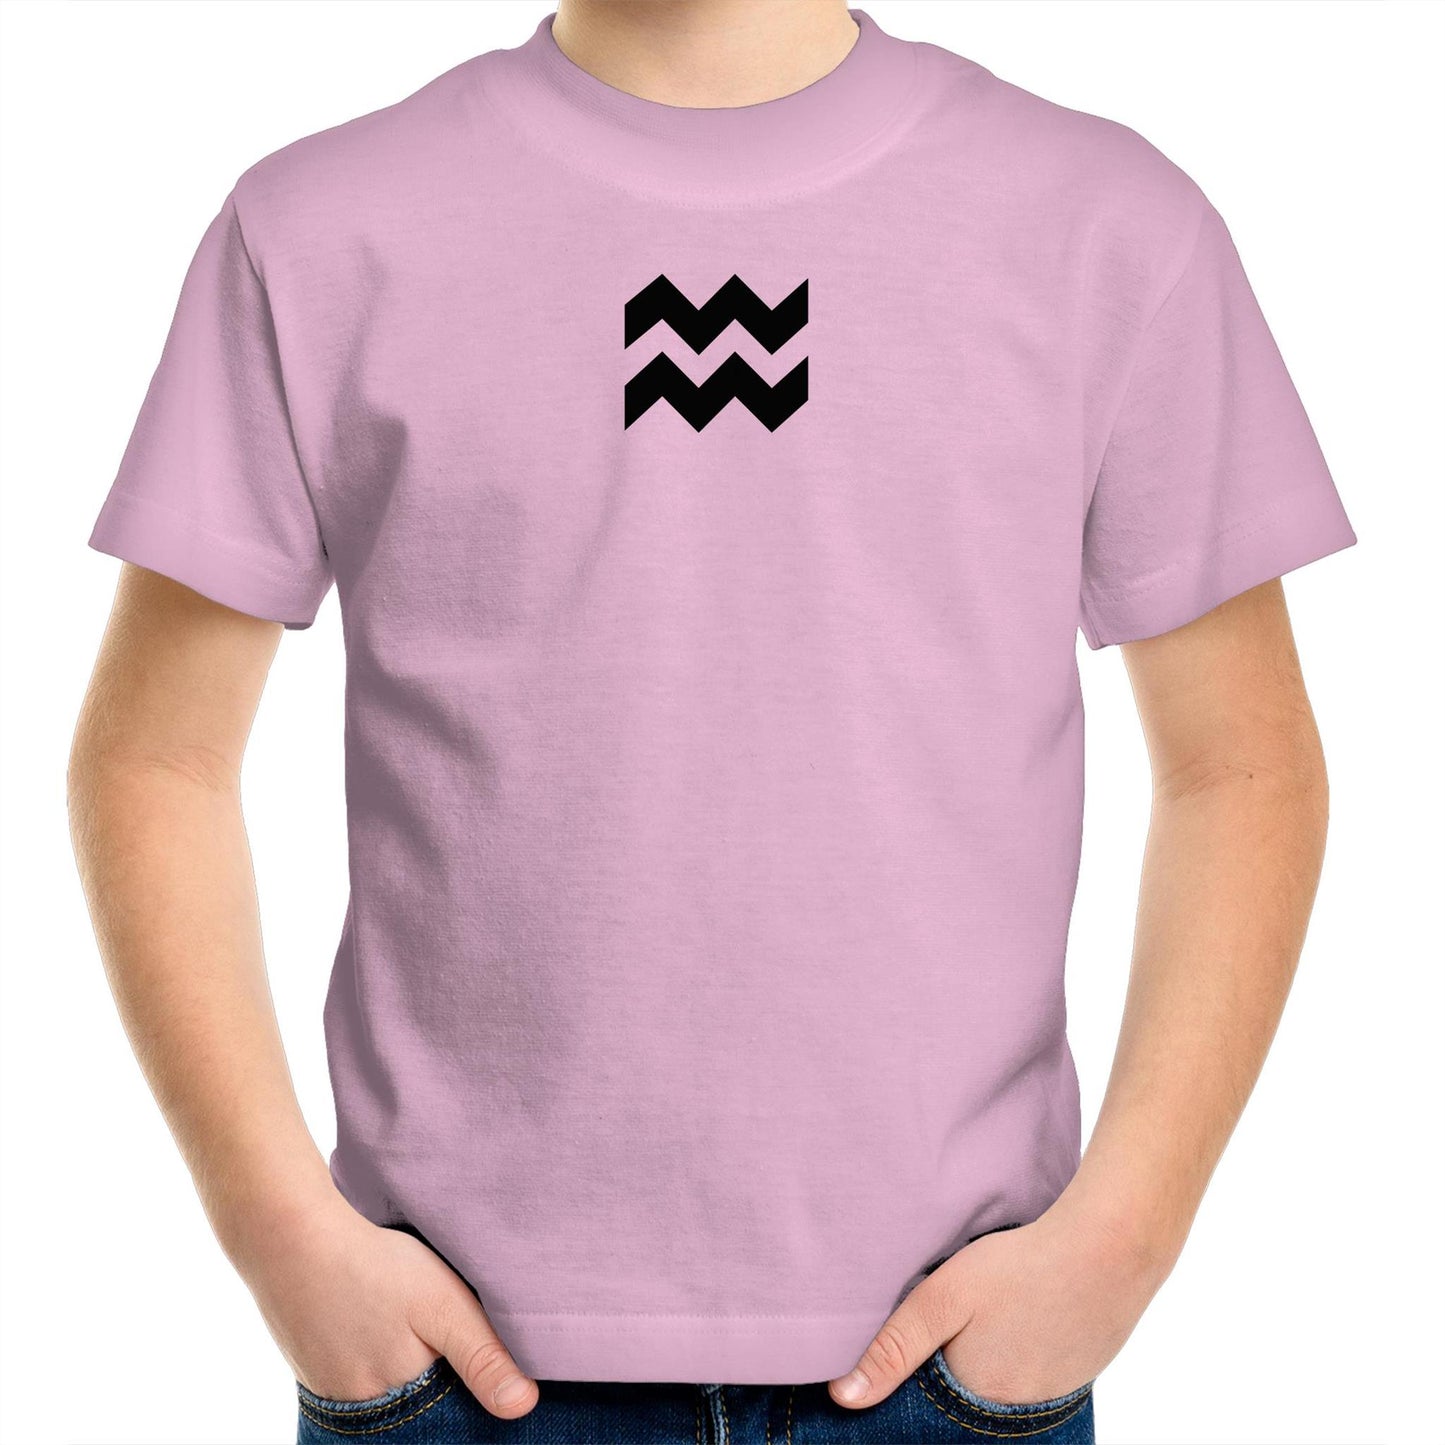 Aquarius T Shirts for Kids